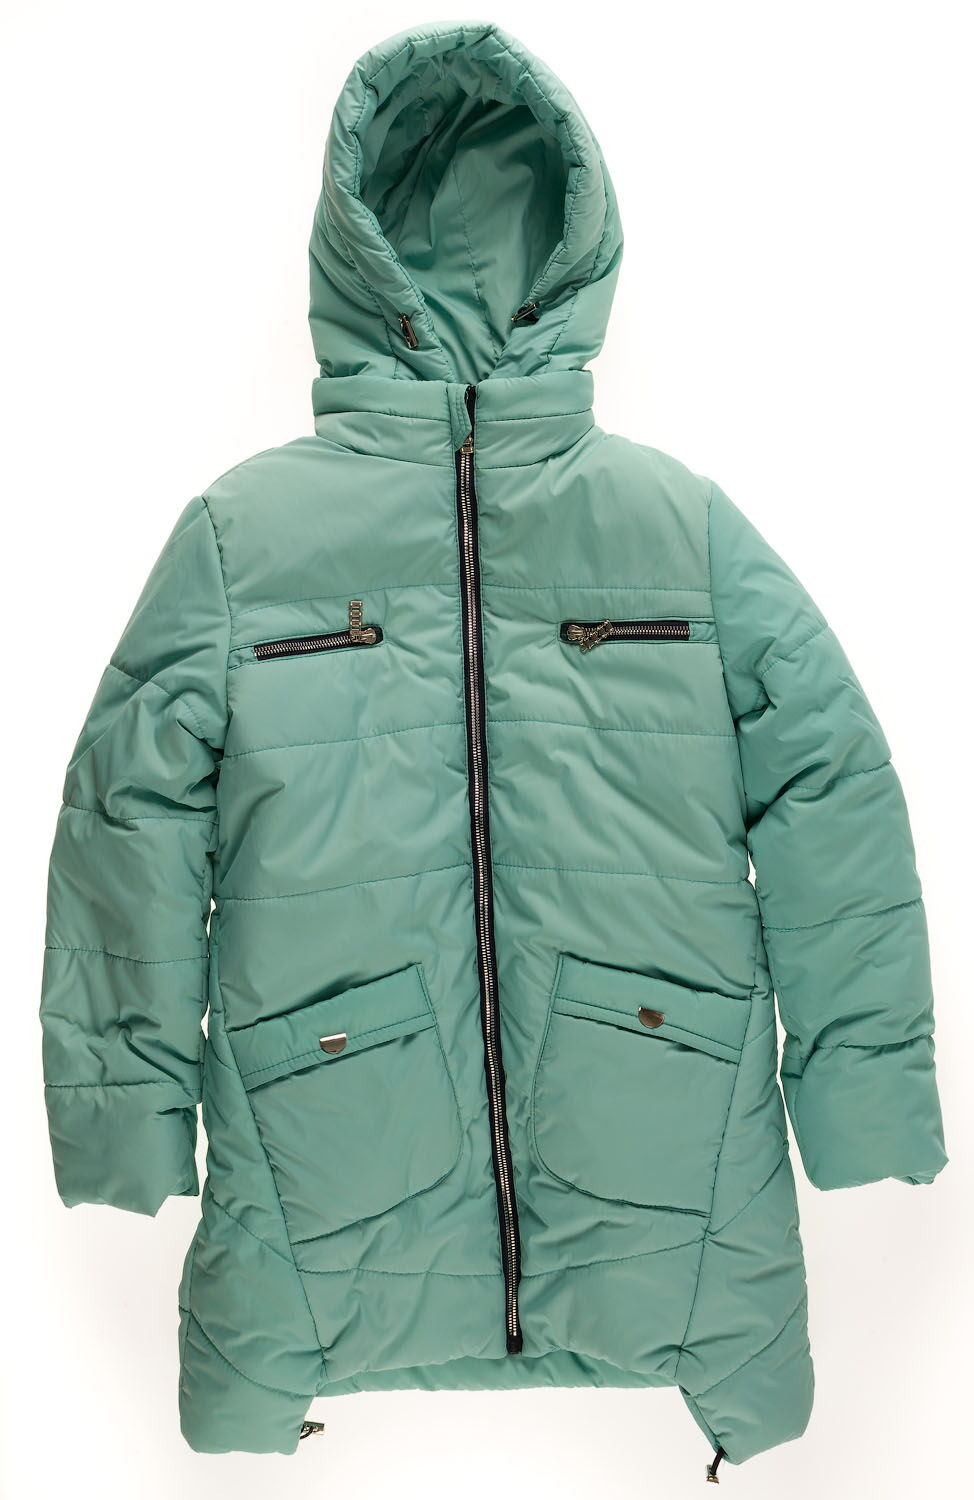 Куртка удлиненная зимняя для девочки Одягайко мята 20009О - цена